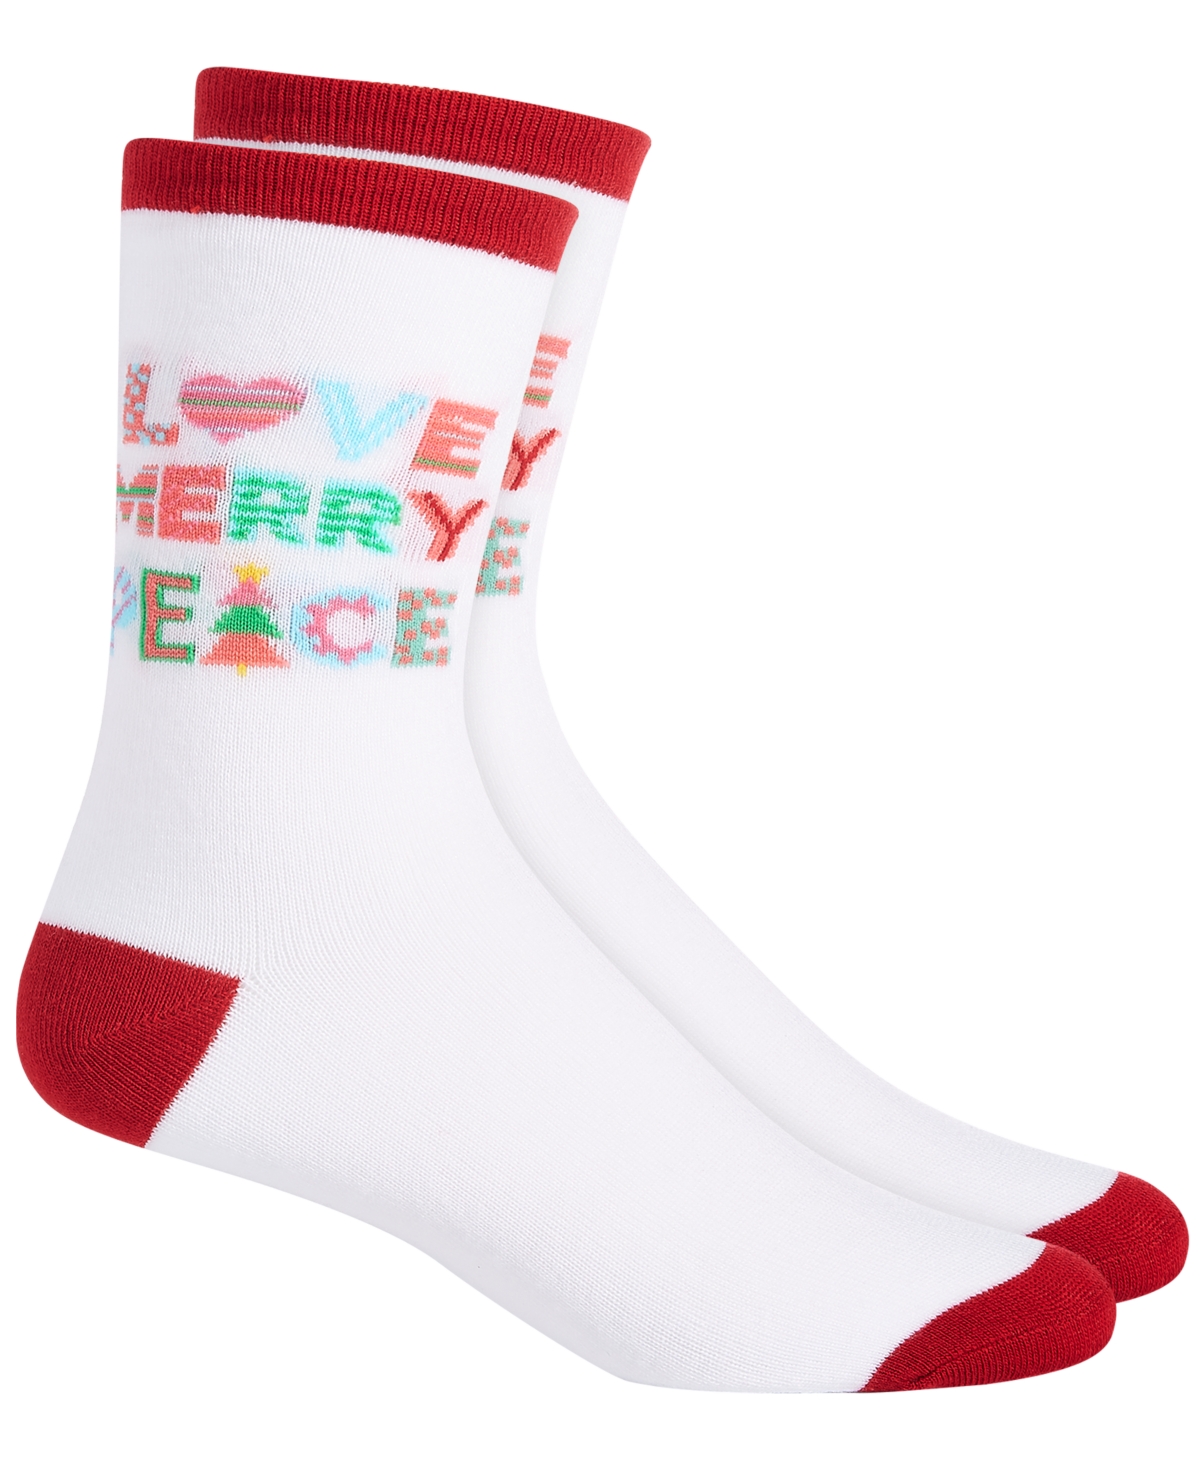 Holiday Crew Socks, Created for Macy's - Tree Fairisle